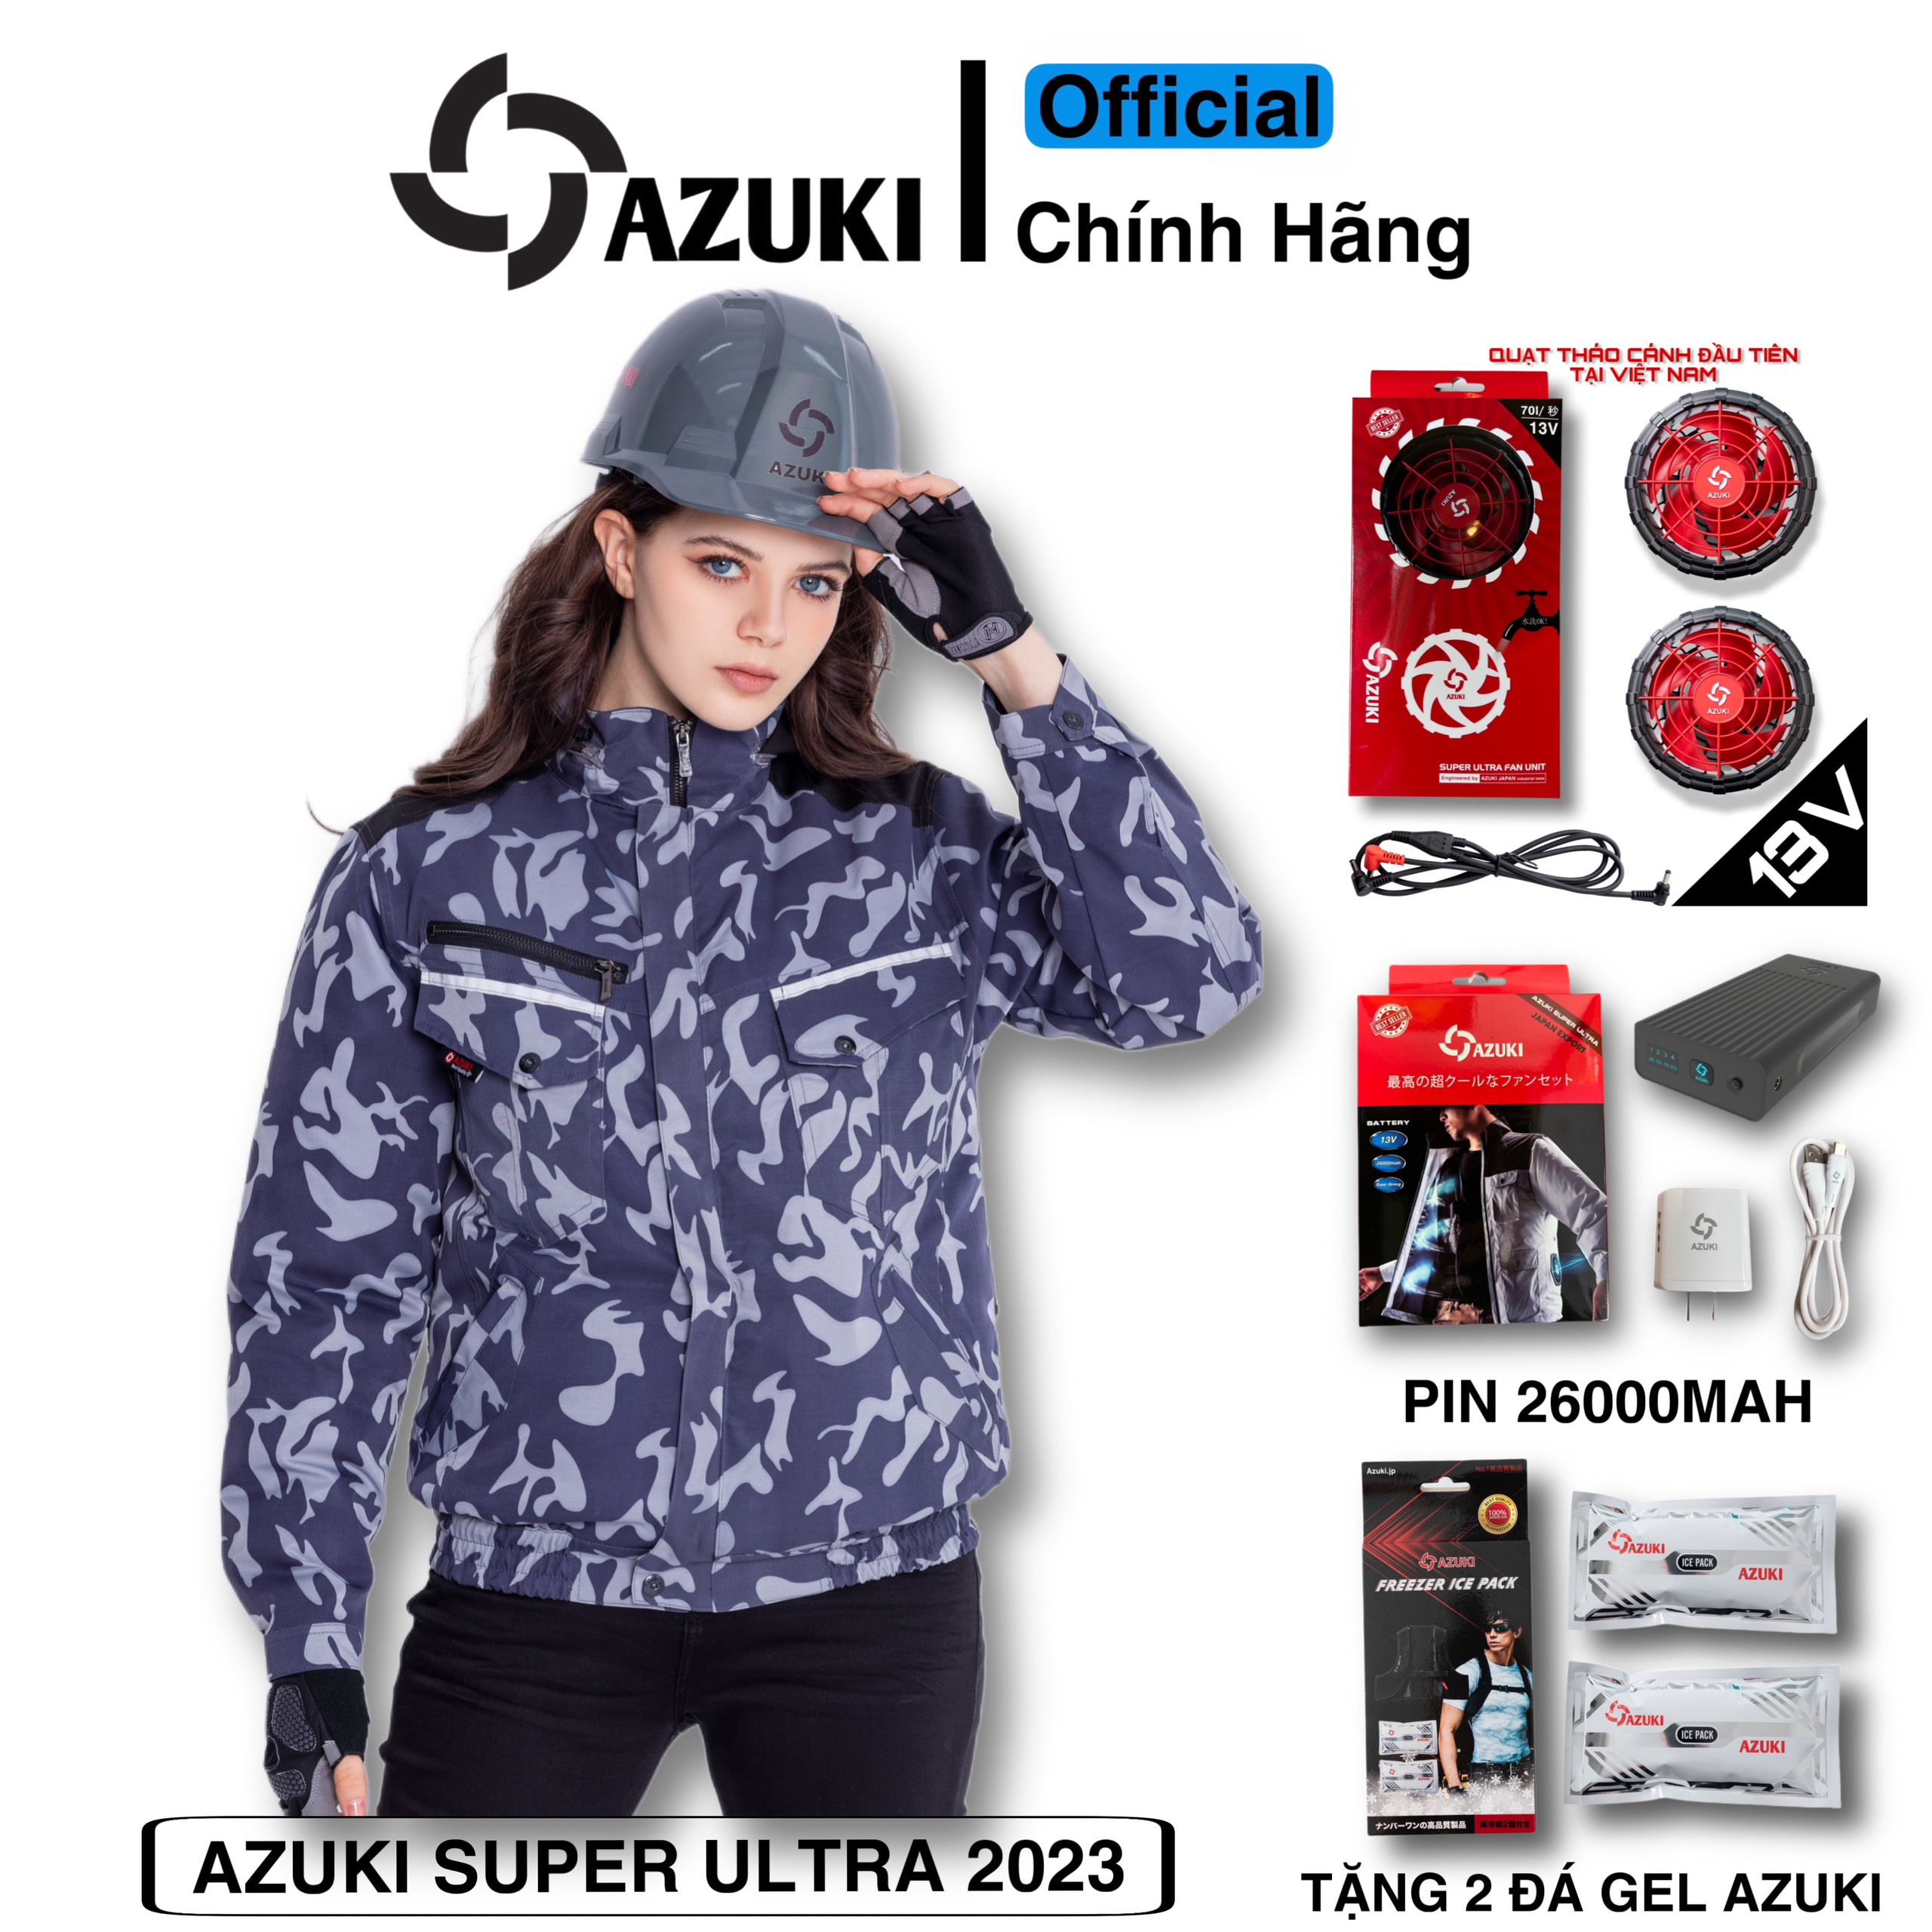 Quạt áo điều hòa Azuki 13V siêu mạnh